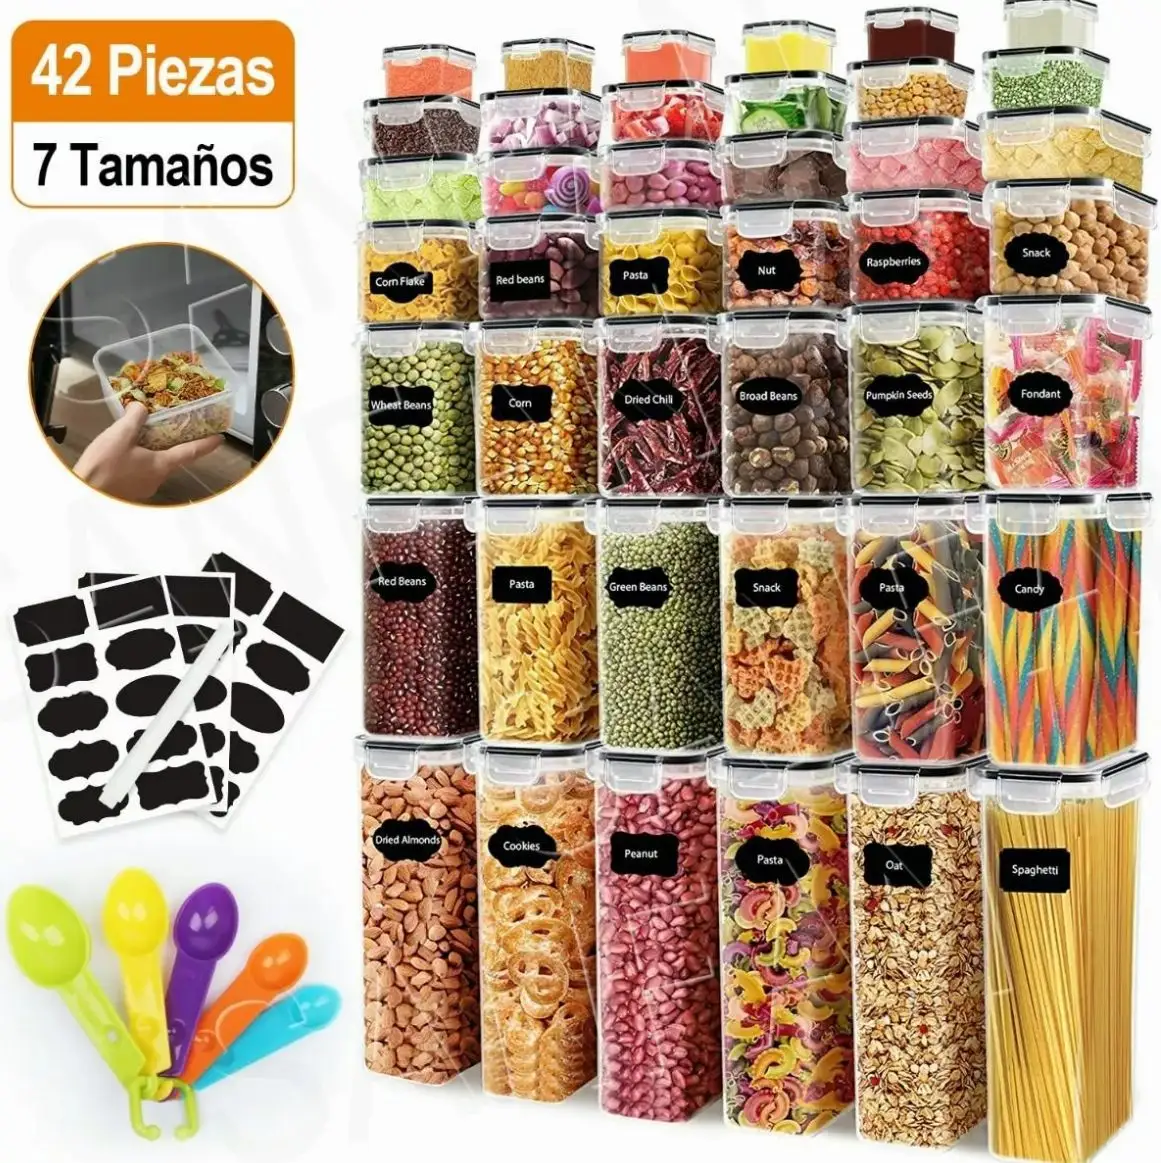 16 24 36 peças conjunto de cereais empilháveis de plástico hermético sem Bpa, organizador de cozinha, recipiente em caixa para armazenamento de alimentos secos, 42 pacotes